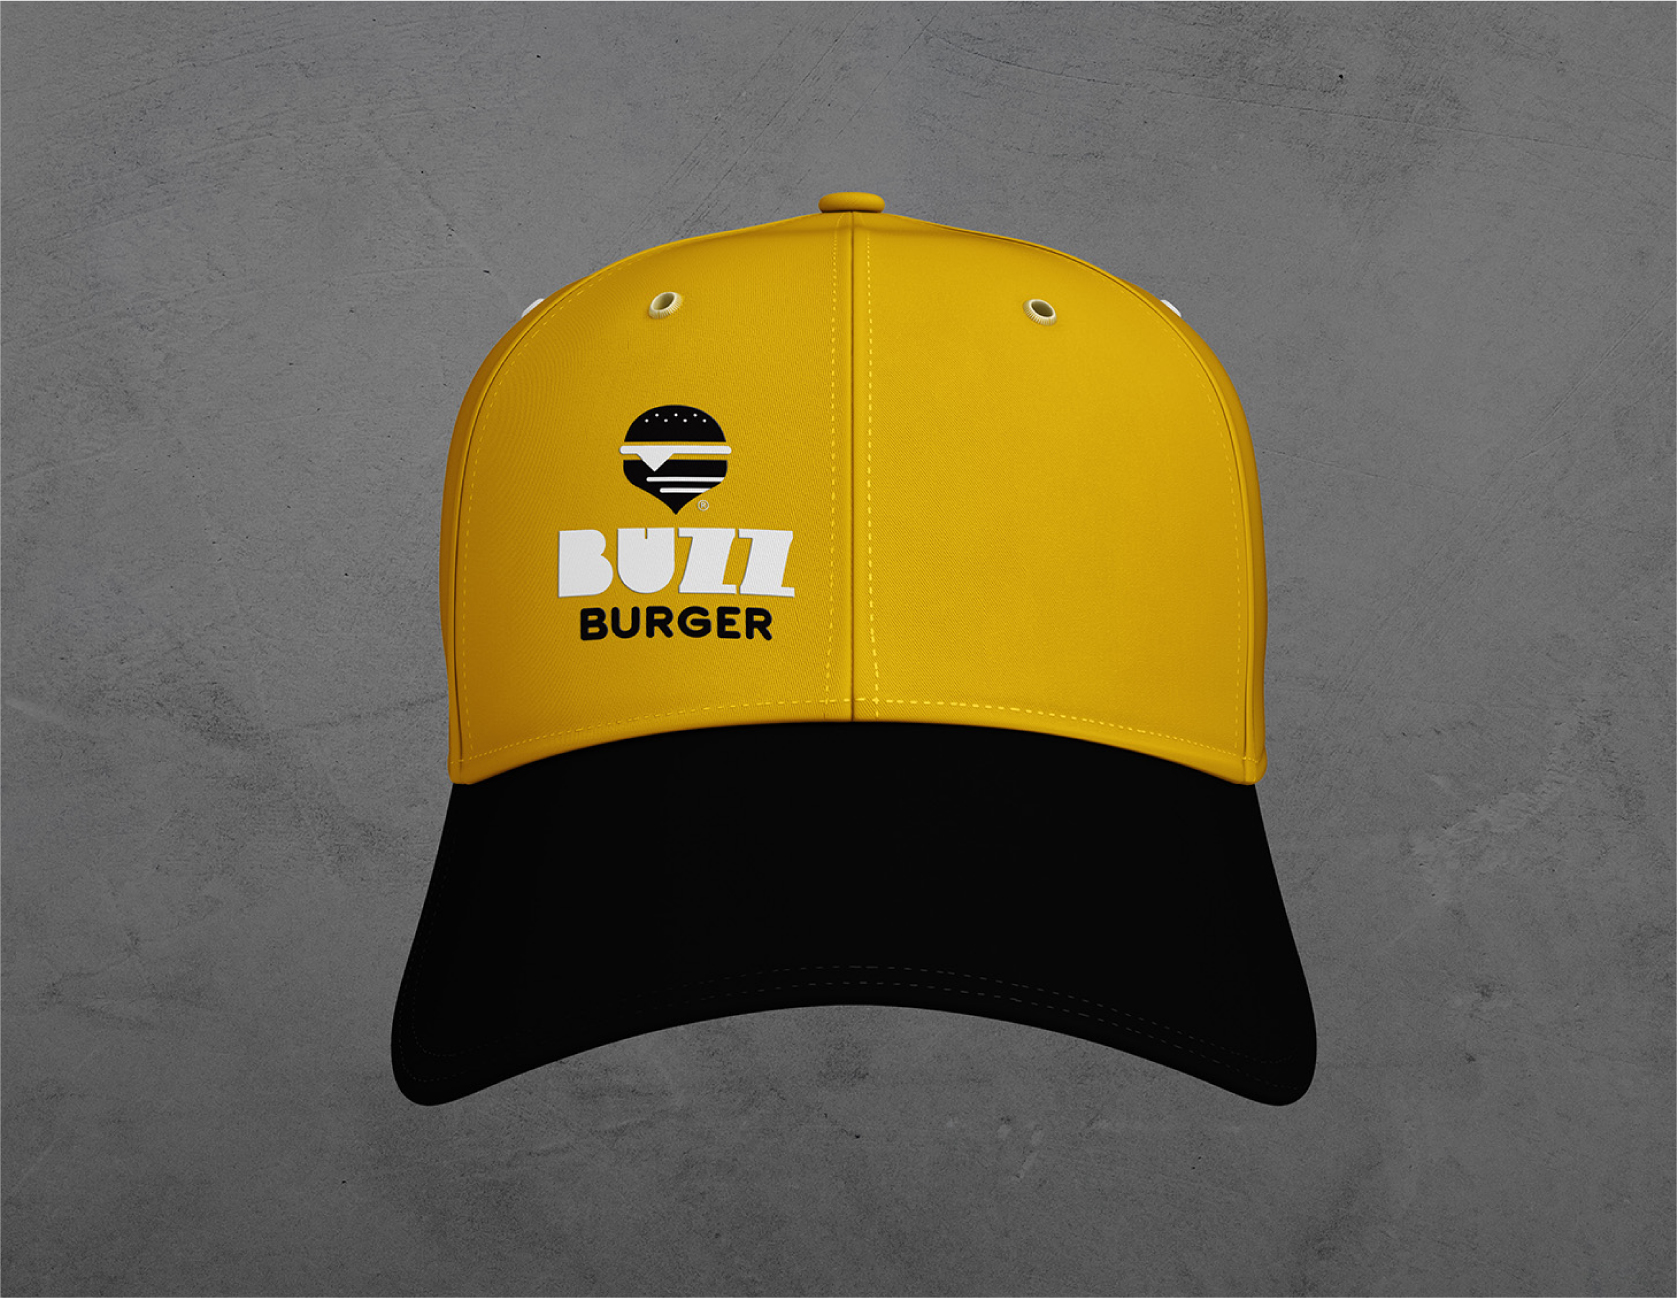 Buzz_Burger_Uniform_Cap